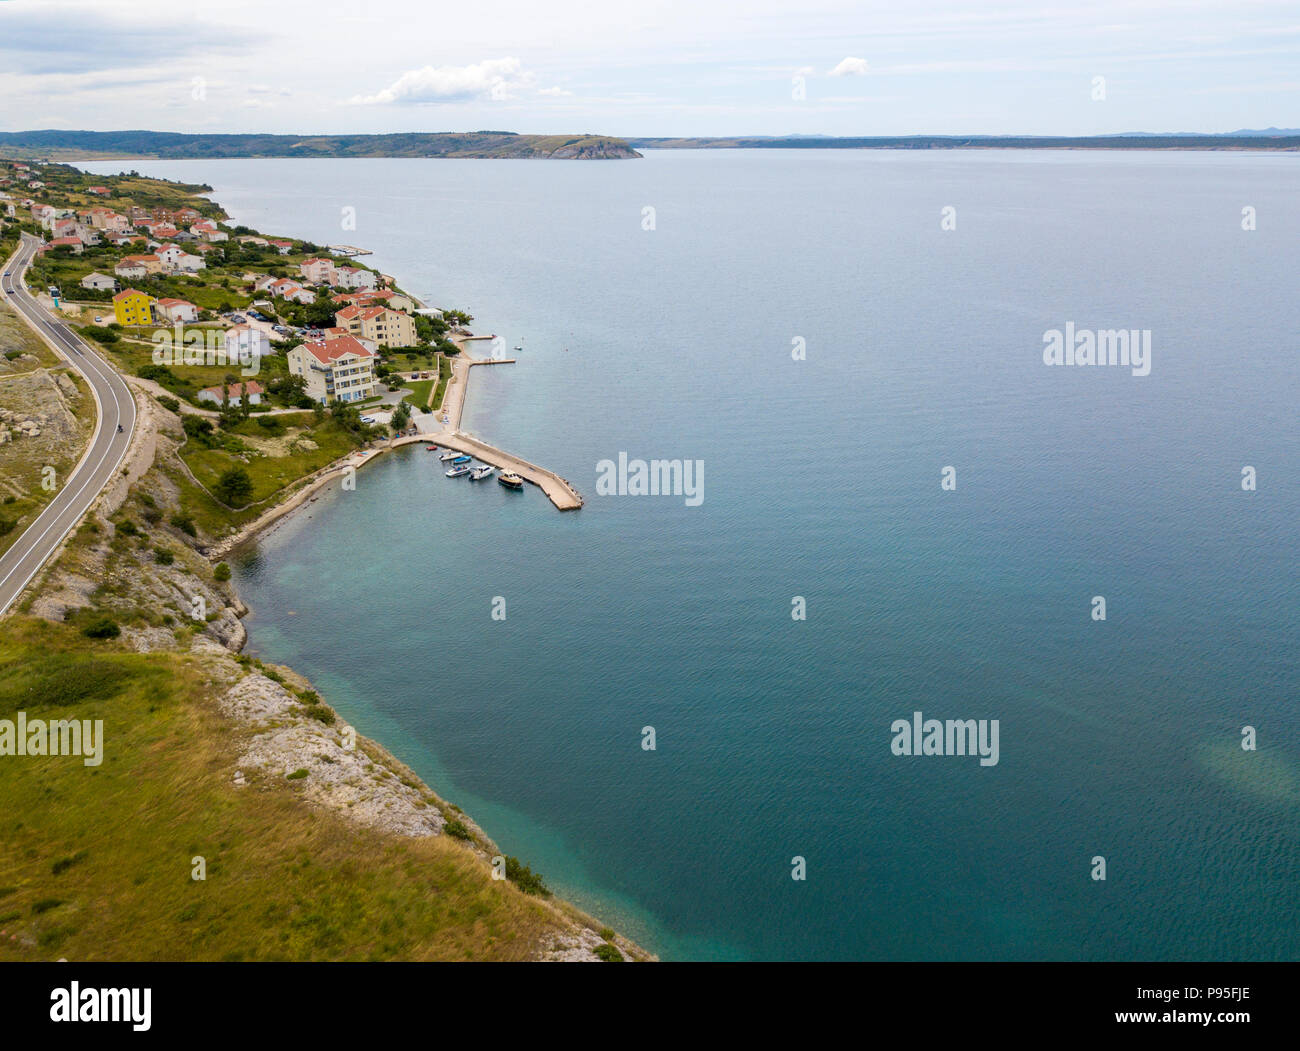 Vista aerea dell'isola di Pag, Croazia, le strade croate e la fascia costiera, le case e gli edifici della cittadina di Rtina. Scogliera affacciato sul mare Foto Stock